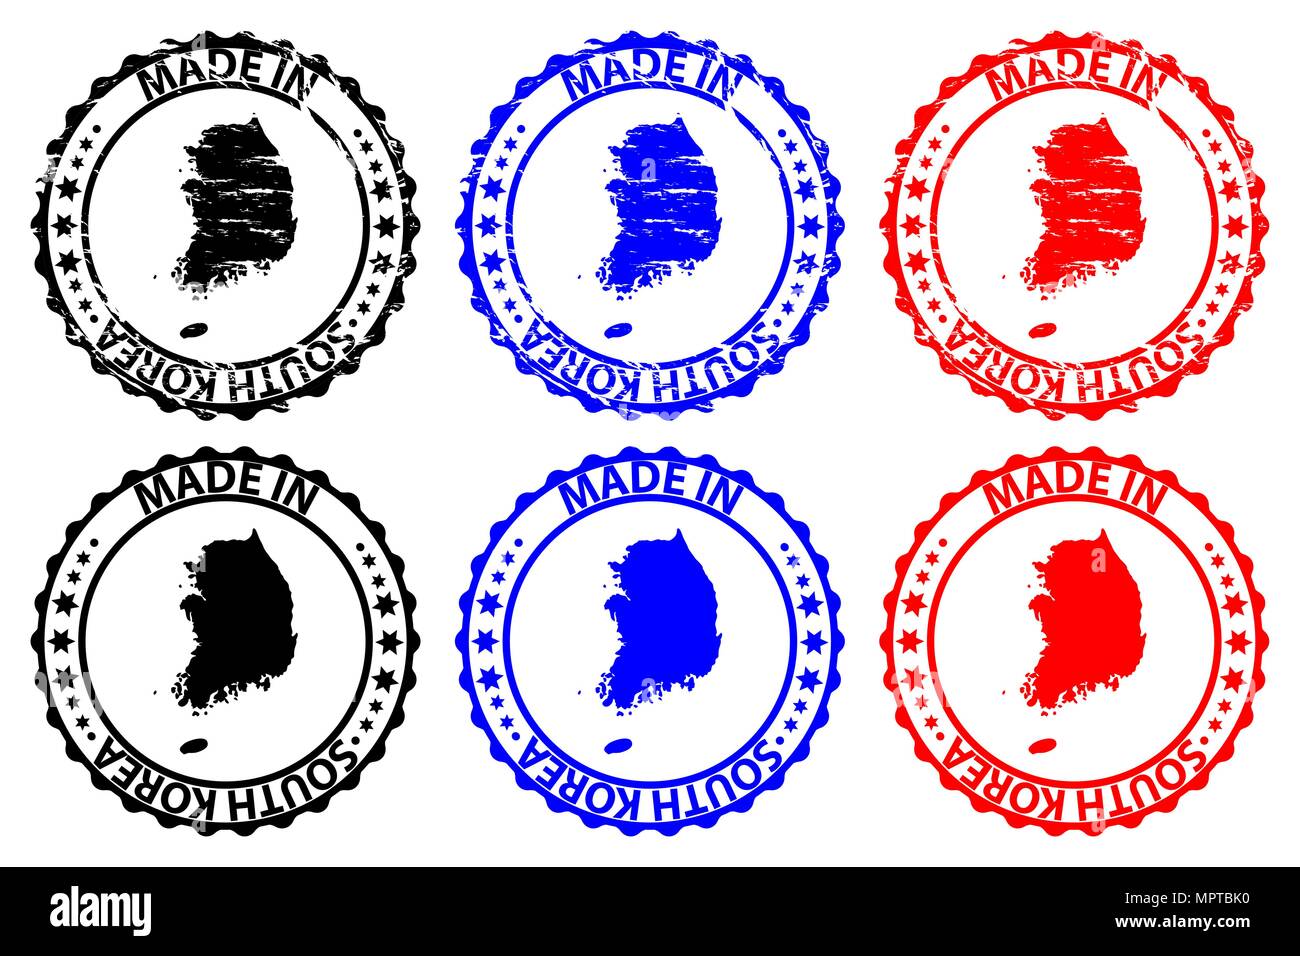 Faites en Corée du Sud - timbres en caoutchouc - vecteur, République de Corée site pattern - noir, bleu et rouge Illustration de Vecteur